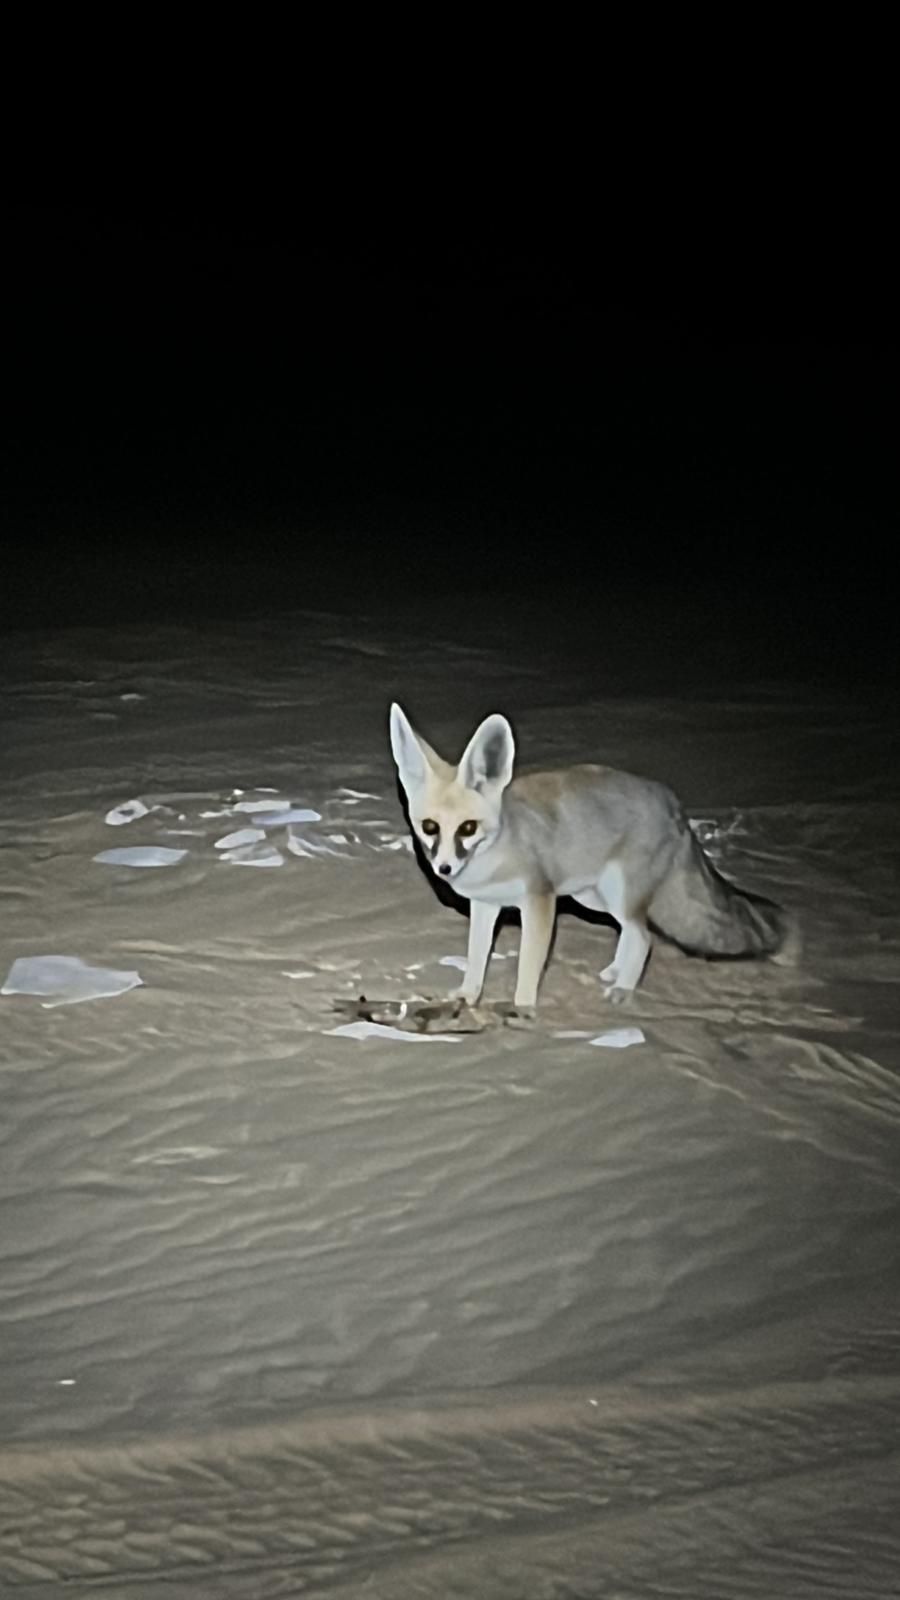 Desert Fox-The white desert